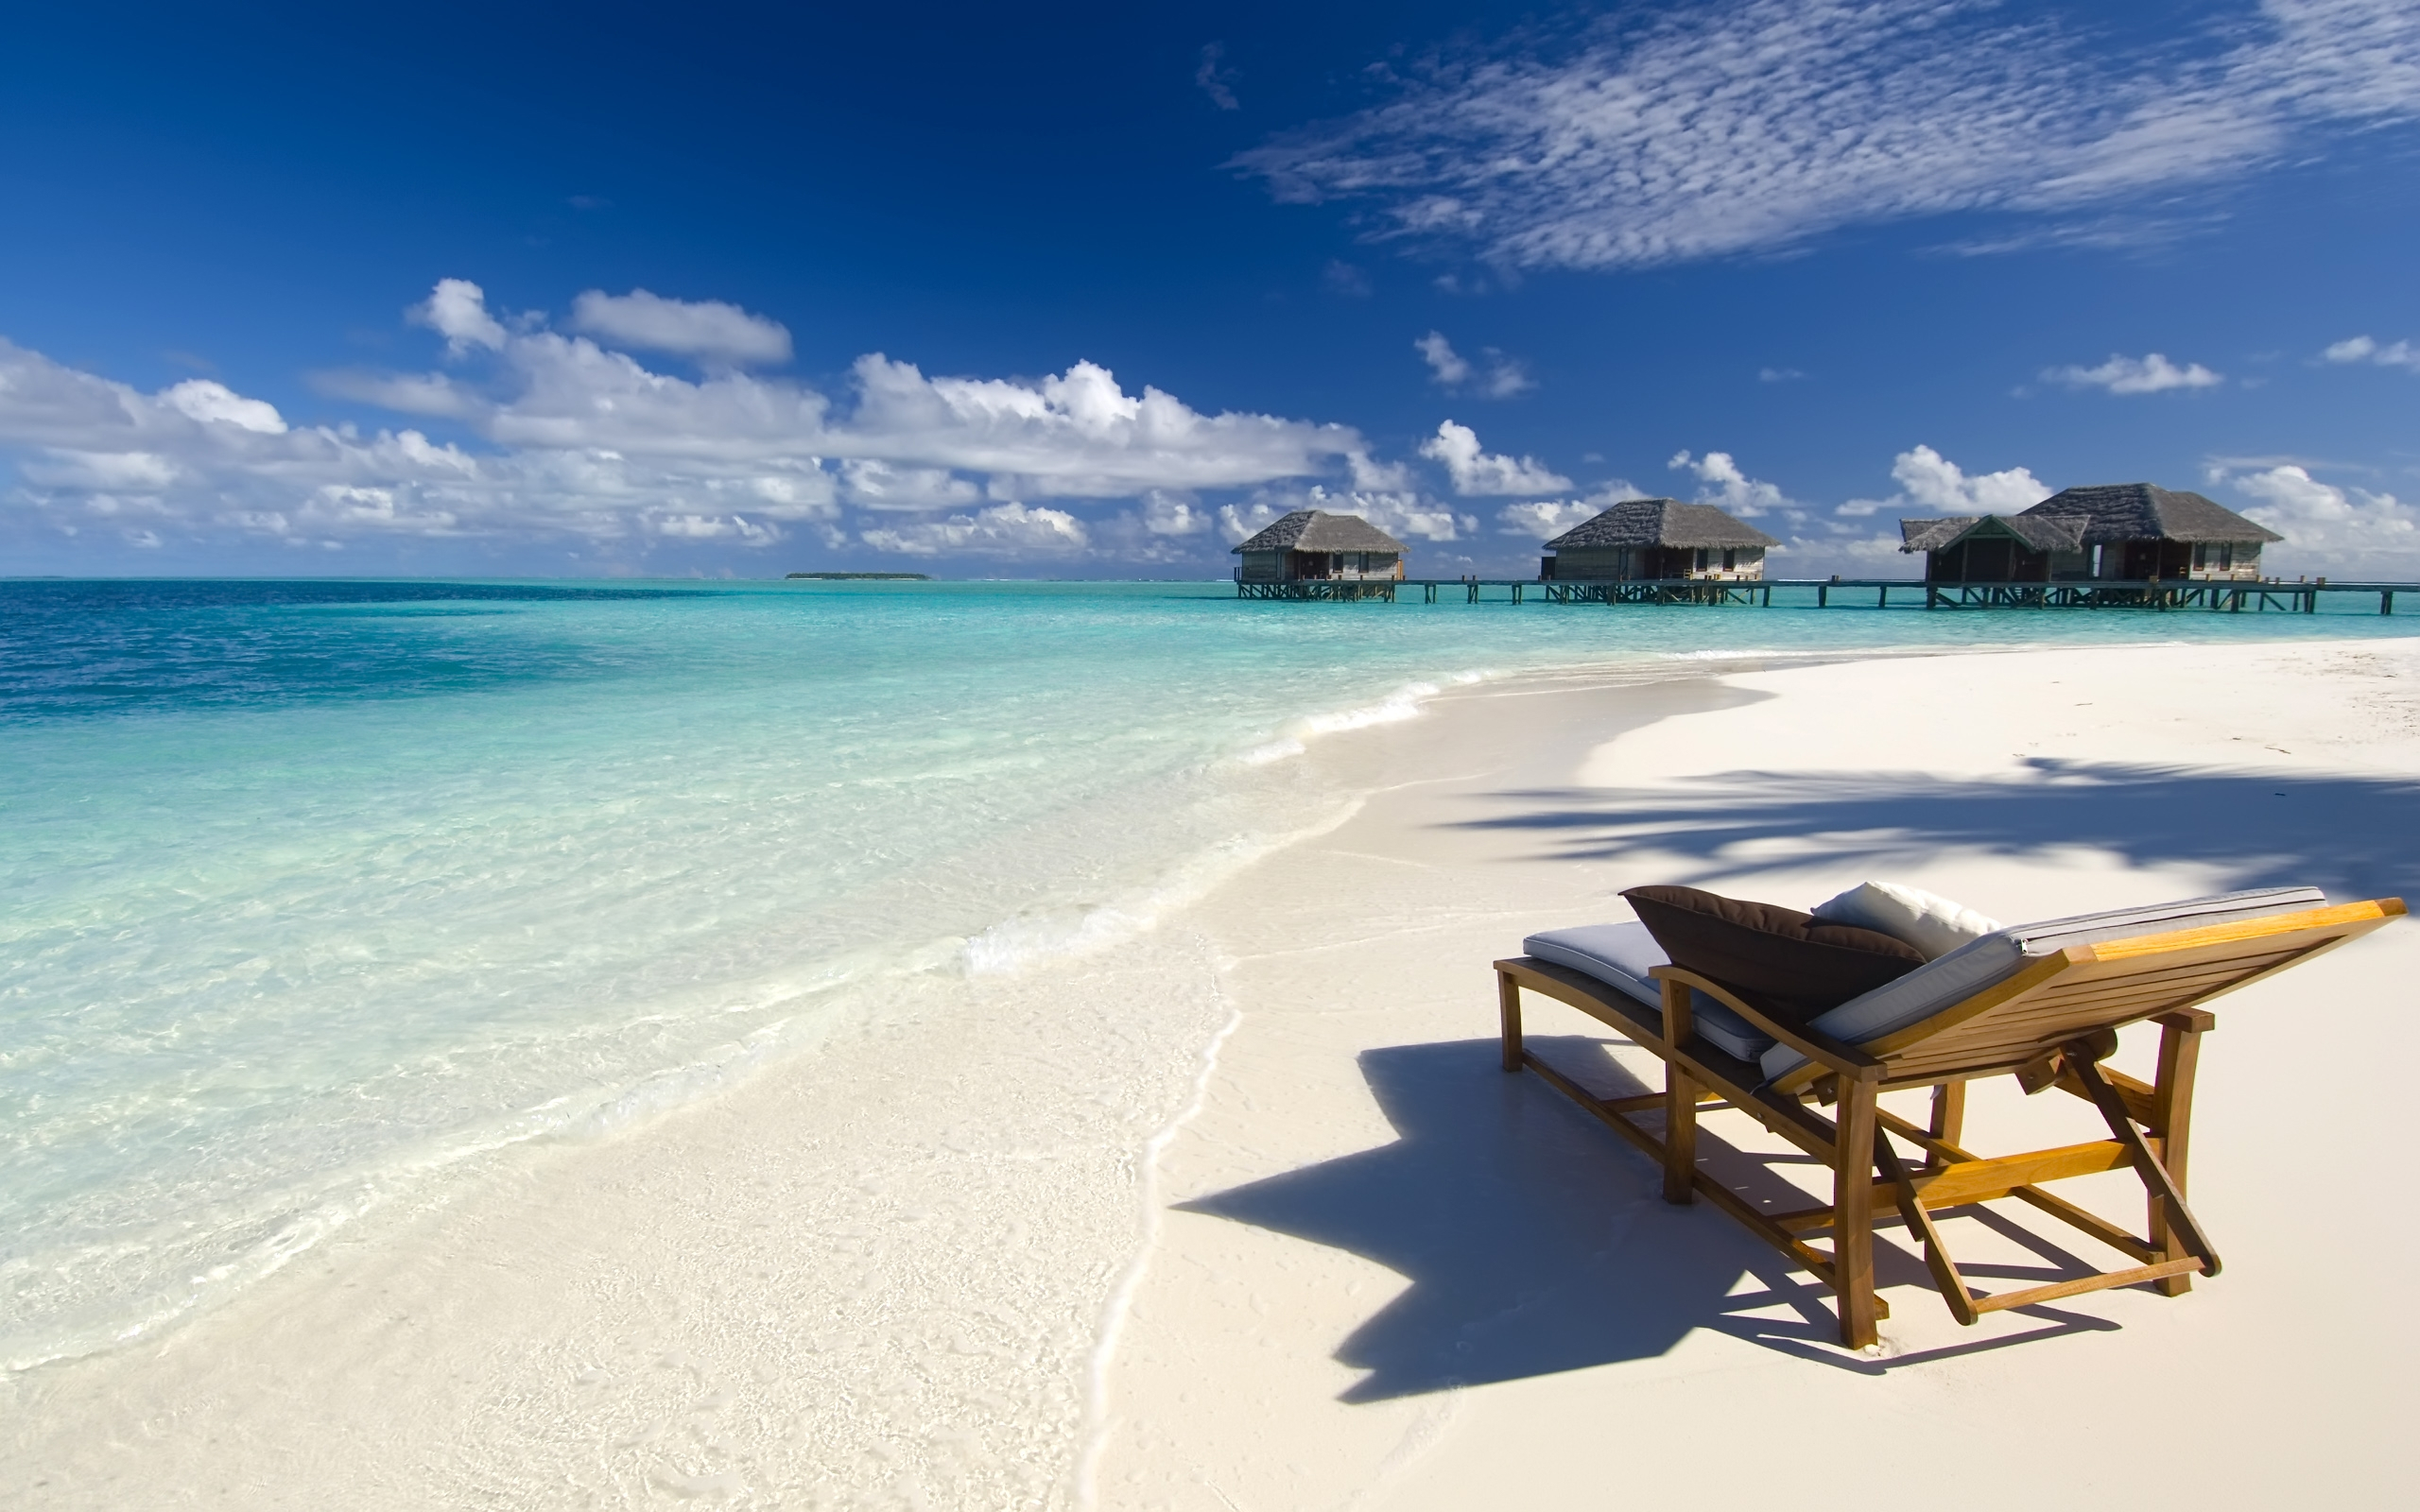 ocean, holiday, sand, beach, photography, chair, hut, tropical